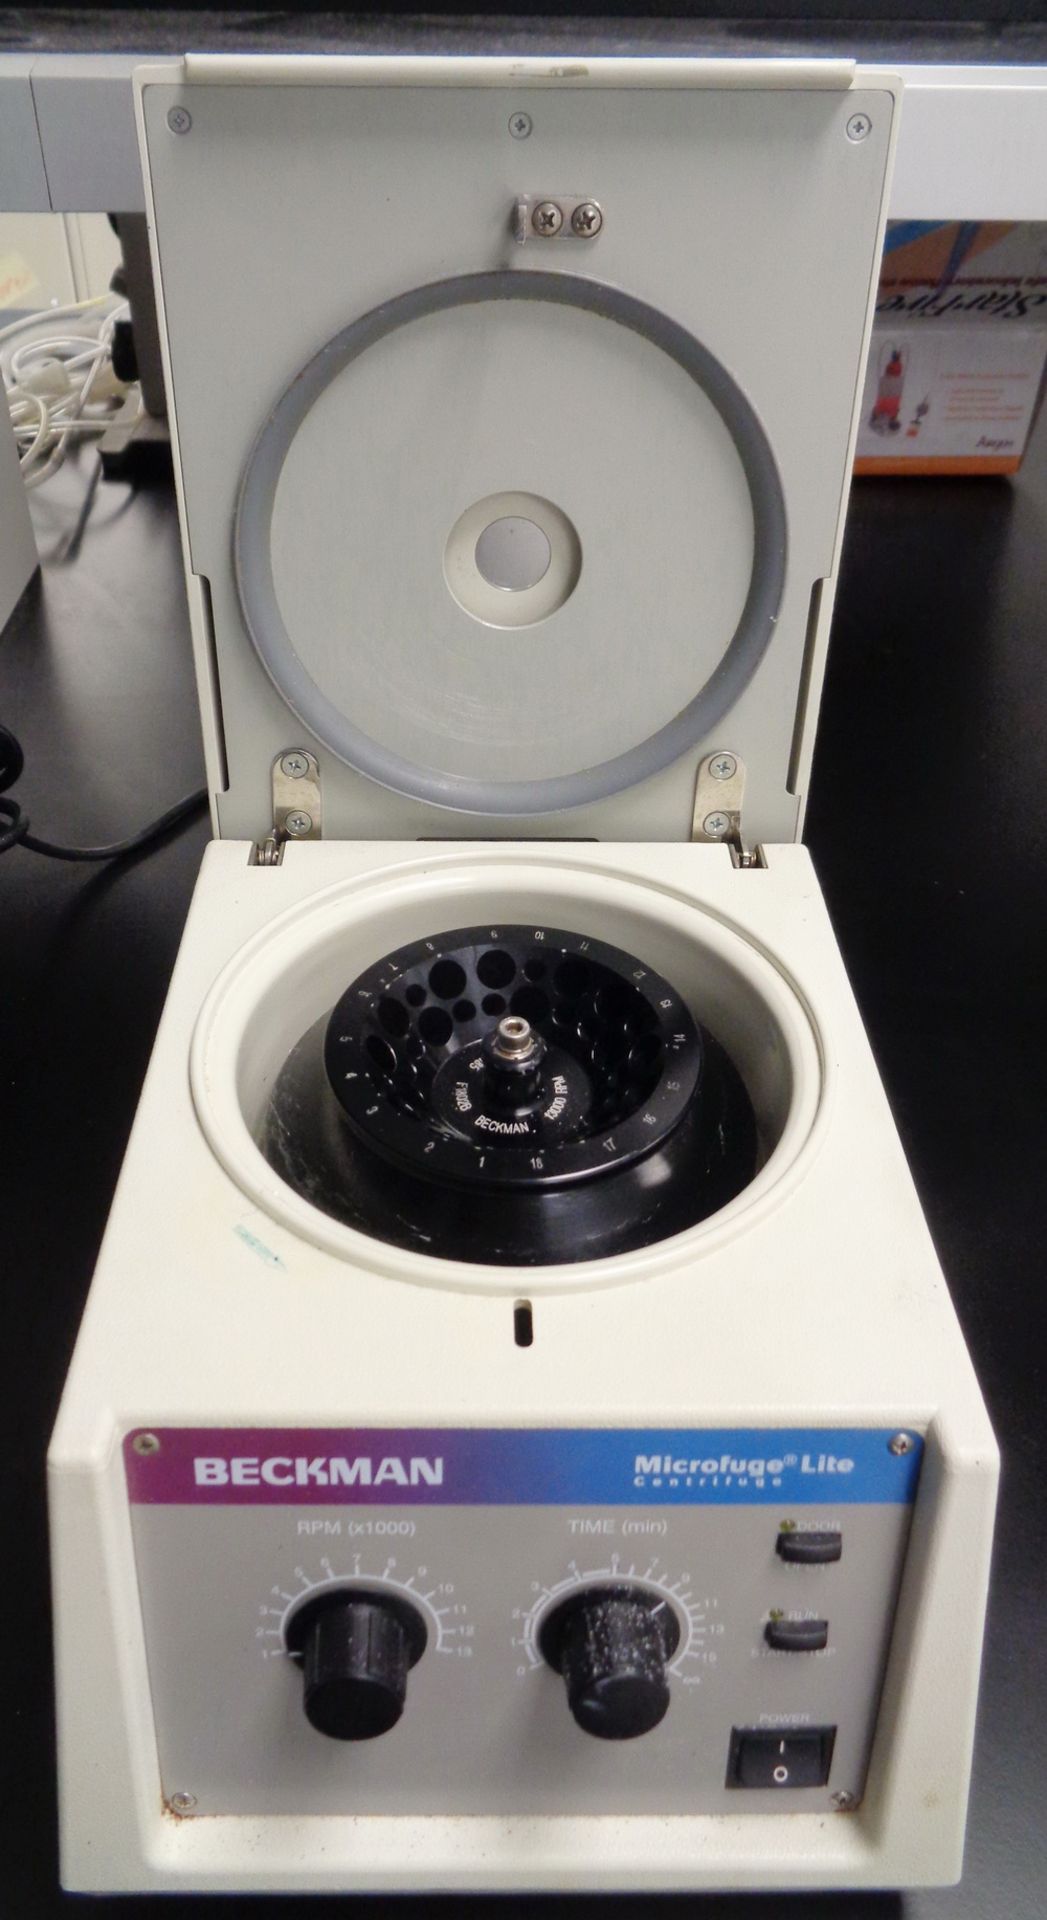 Beckman Microfuge Lite Centrifuge, S/N MLA-99D43 - Image 2 of 3